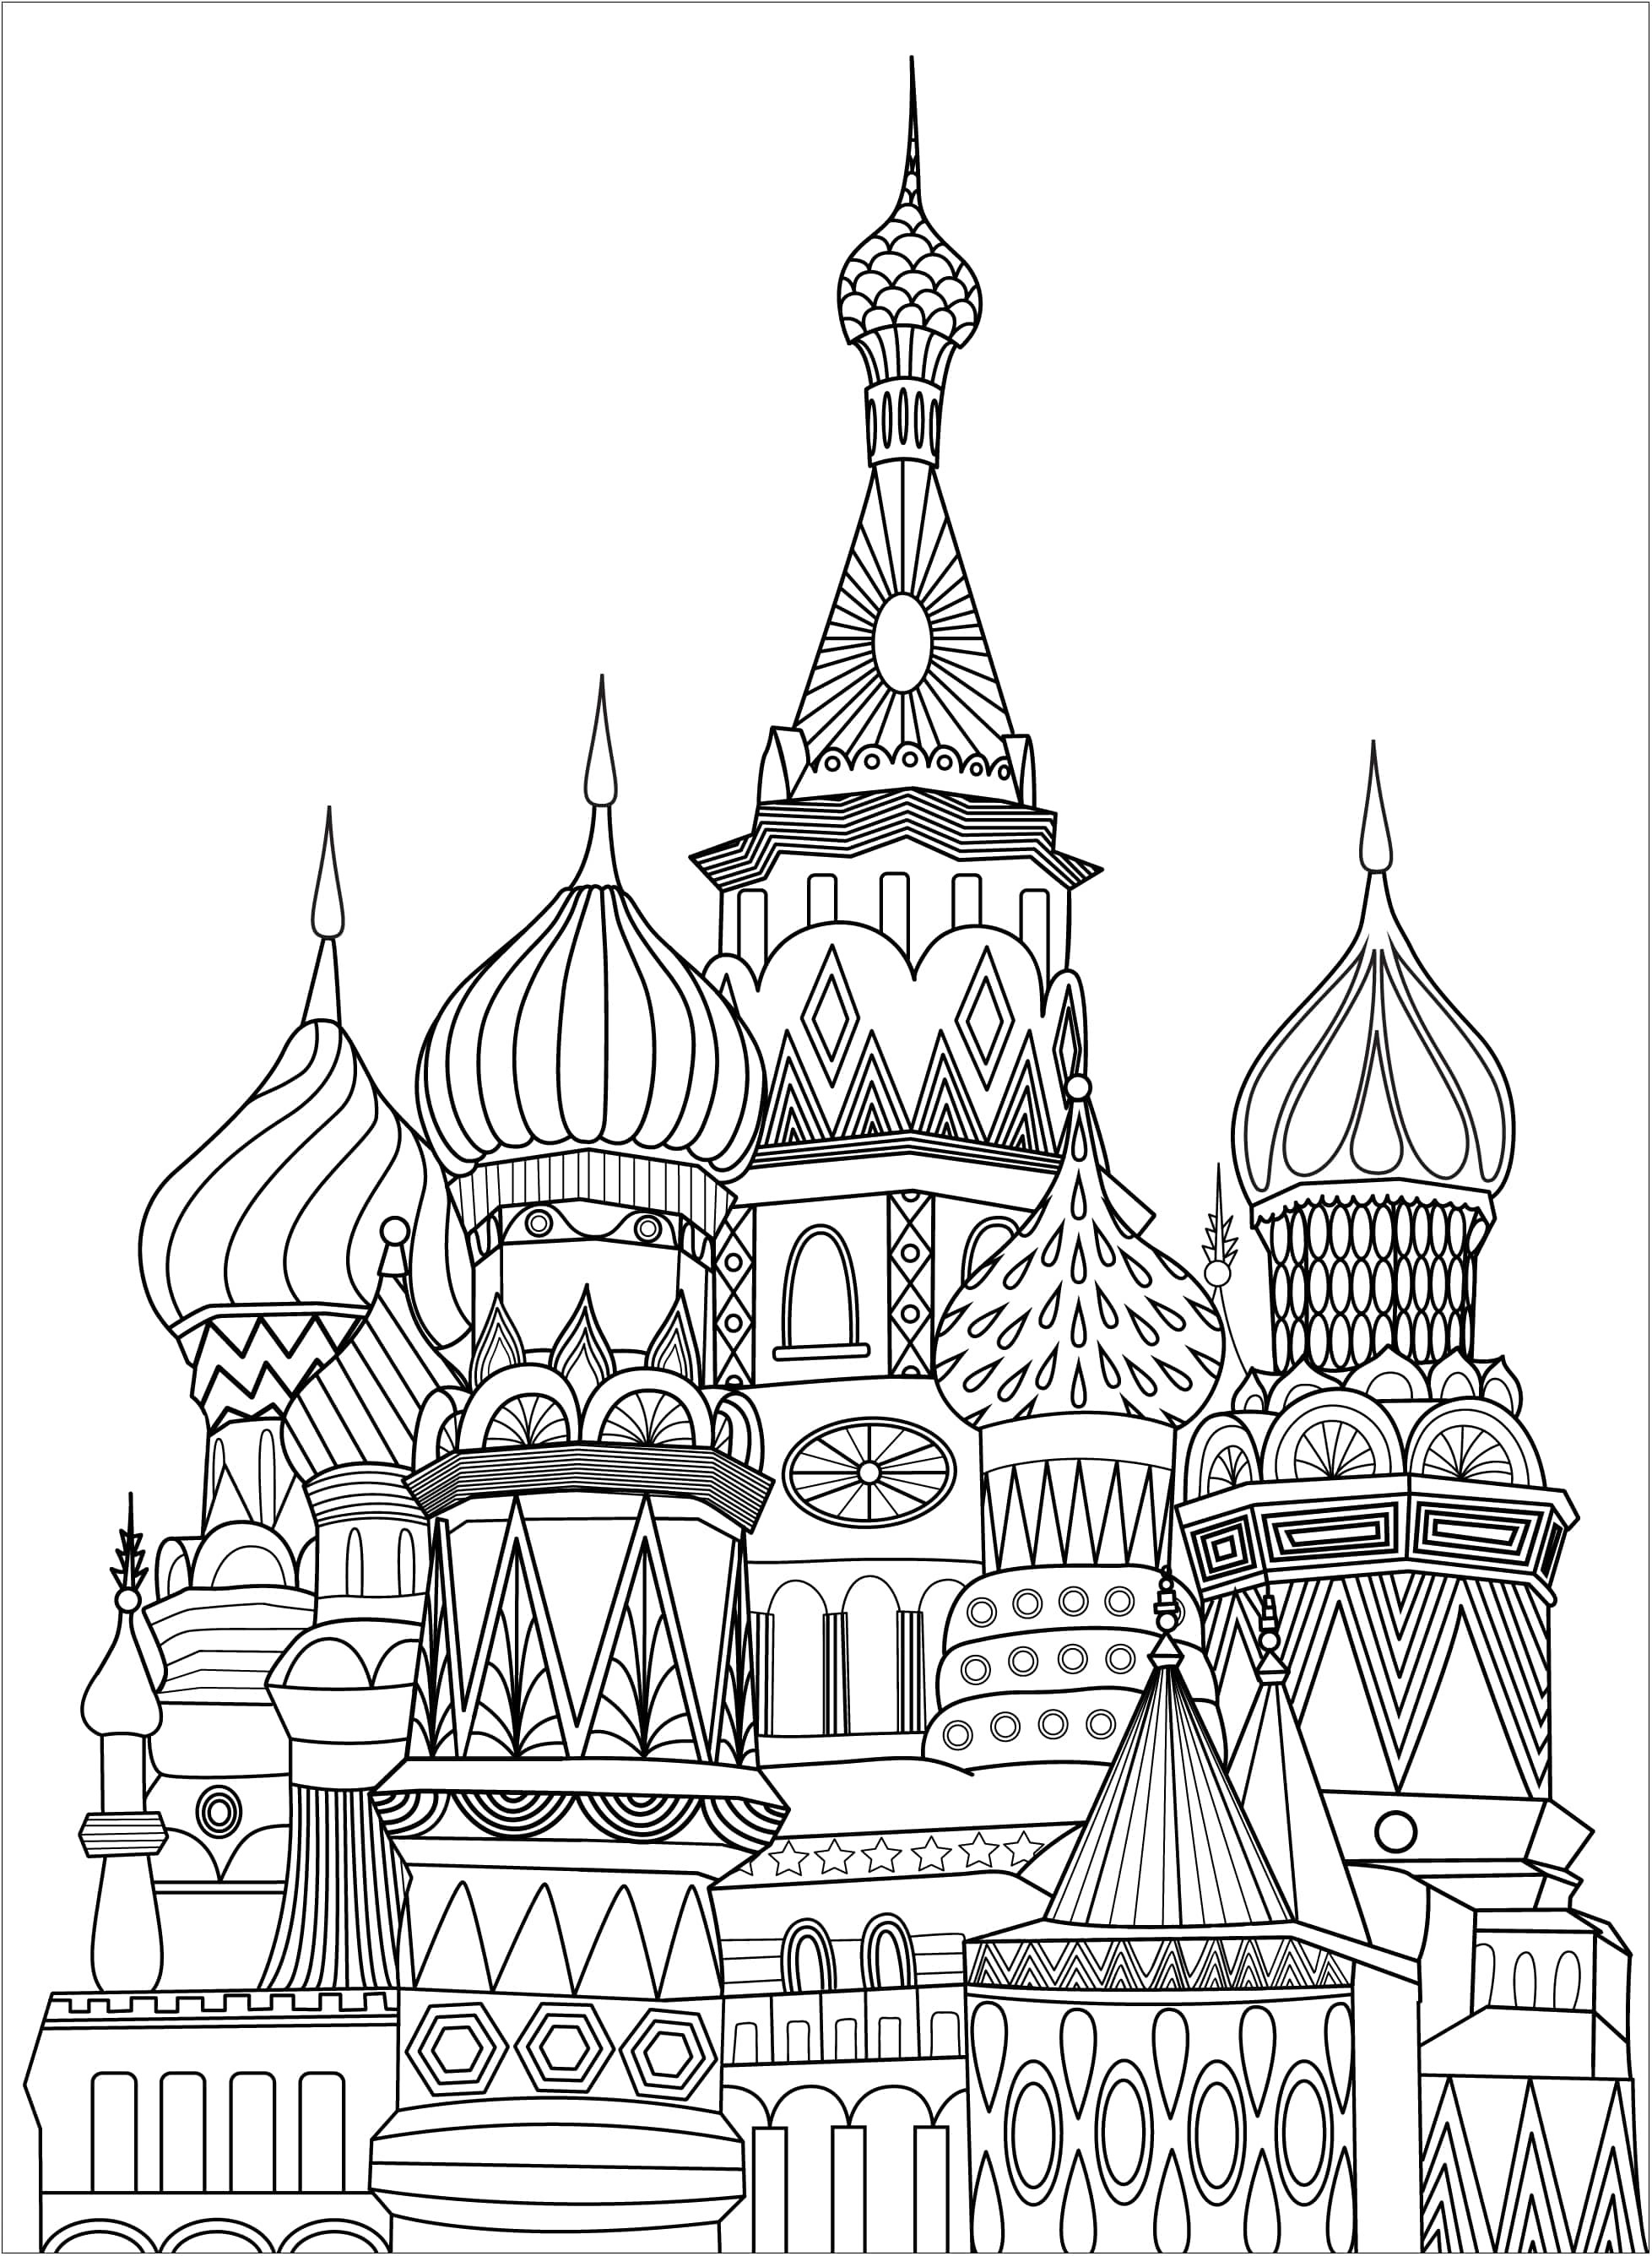 Pagina unica da colorare che rappresenta la Piazza Rossa a Mosca. La Piazza Rossa è una piazza aperta di Mosca, adiacente alla storica fortezza e al centro del governo noto come Cremlino.